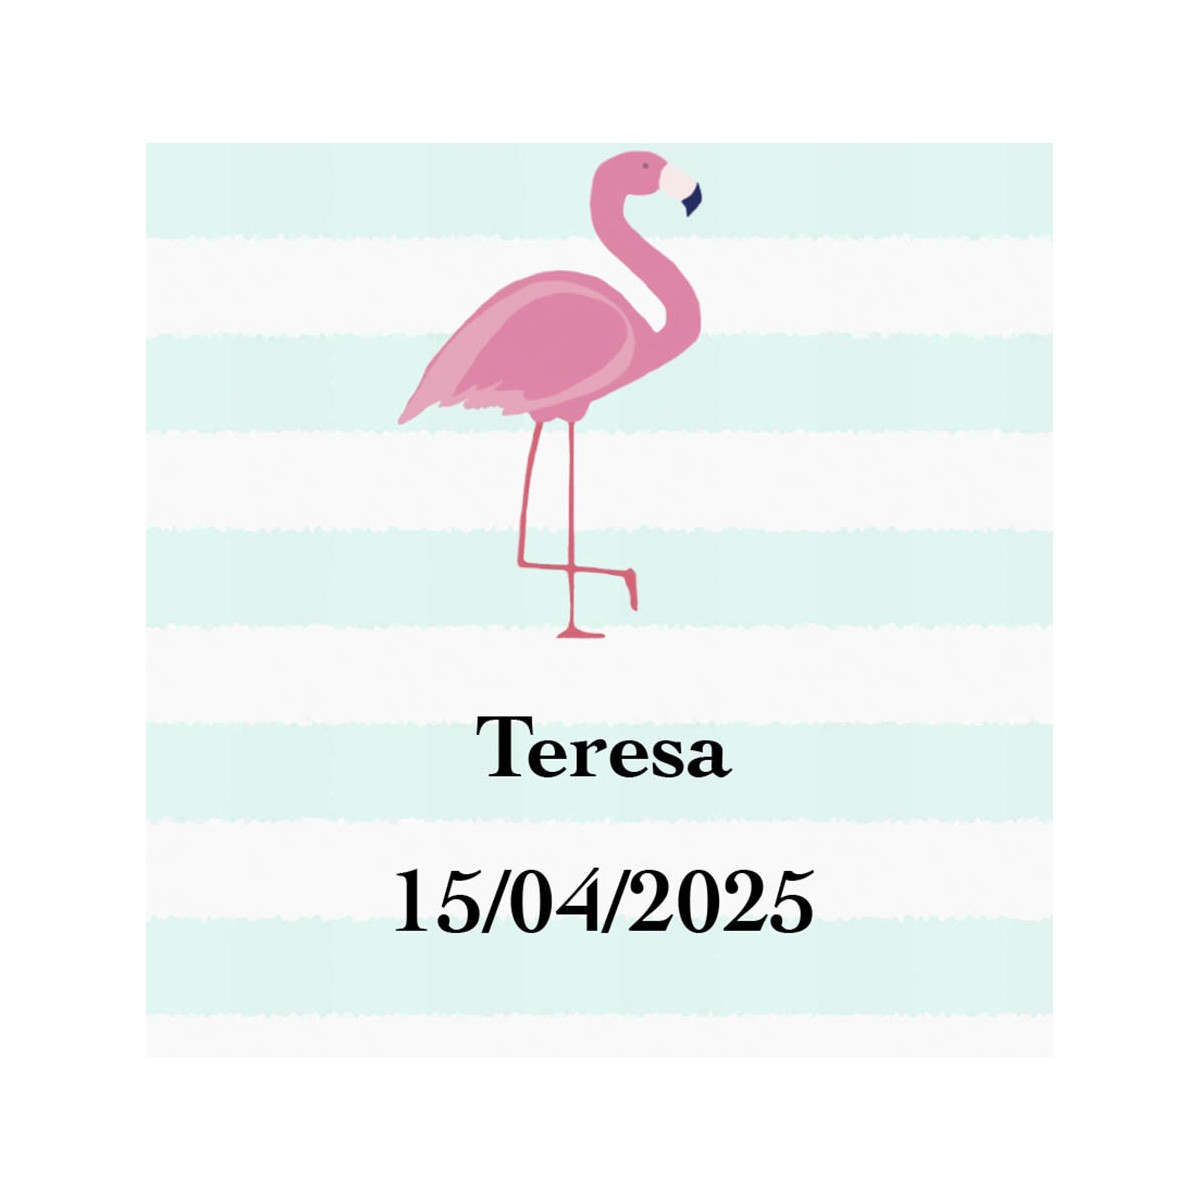 Adesivo de flamenco quadrado personalizado com nome e data